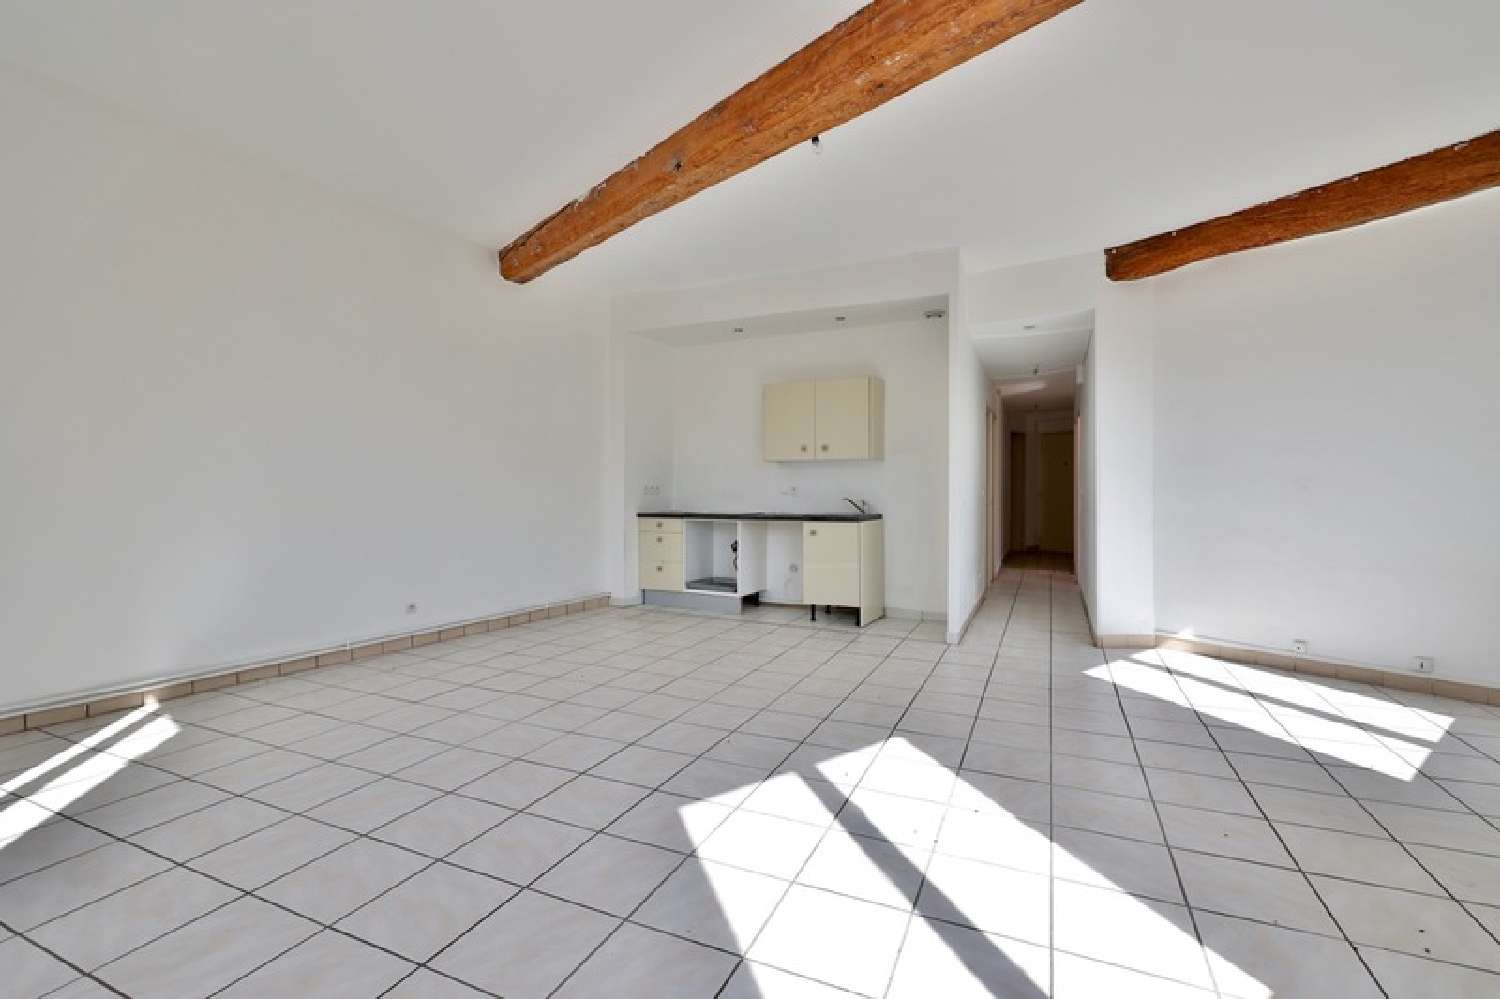  for sale apartment Pontcharra-sur-Turdine Rhône 1